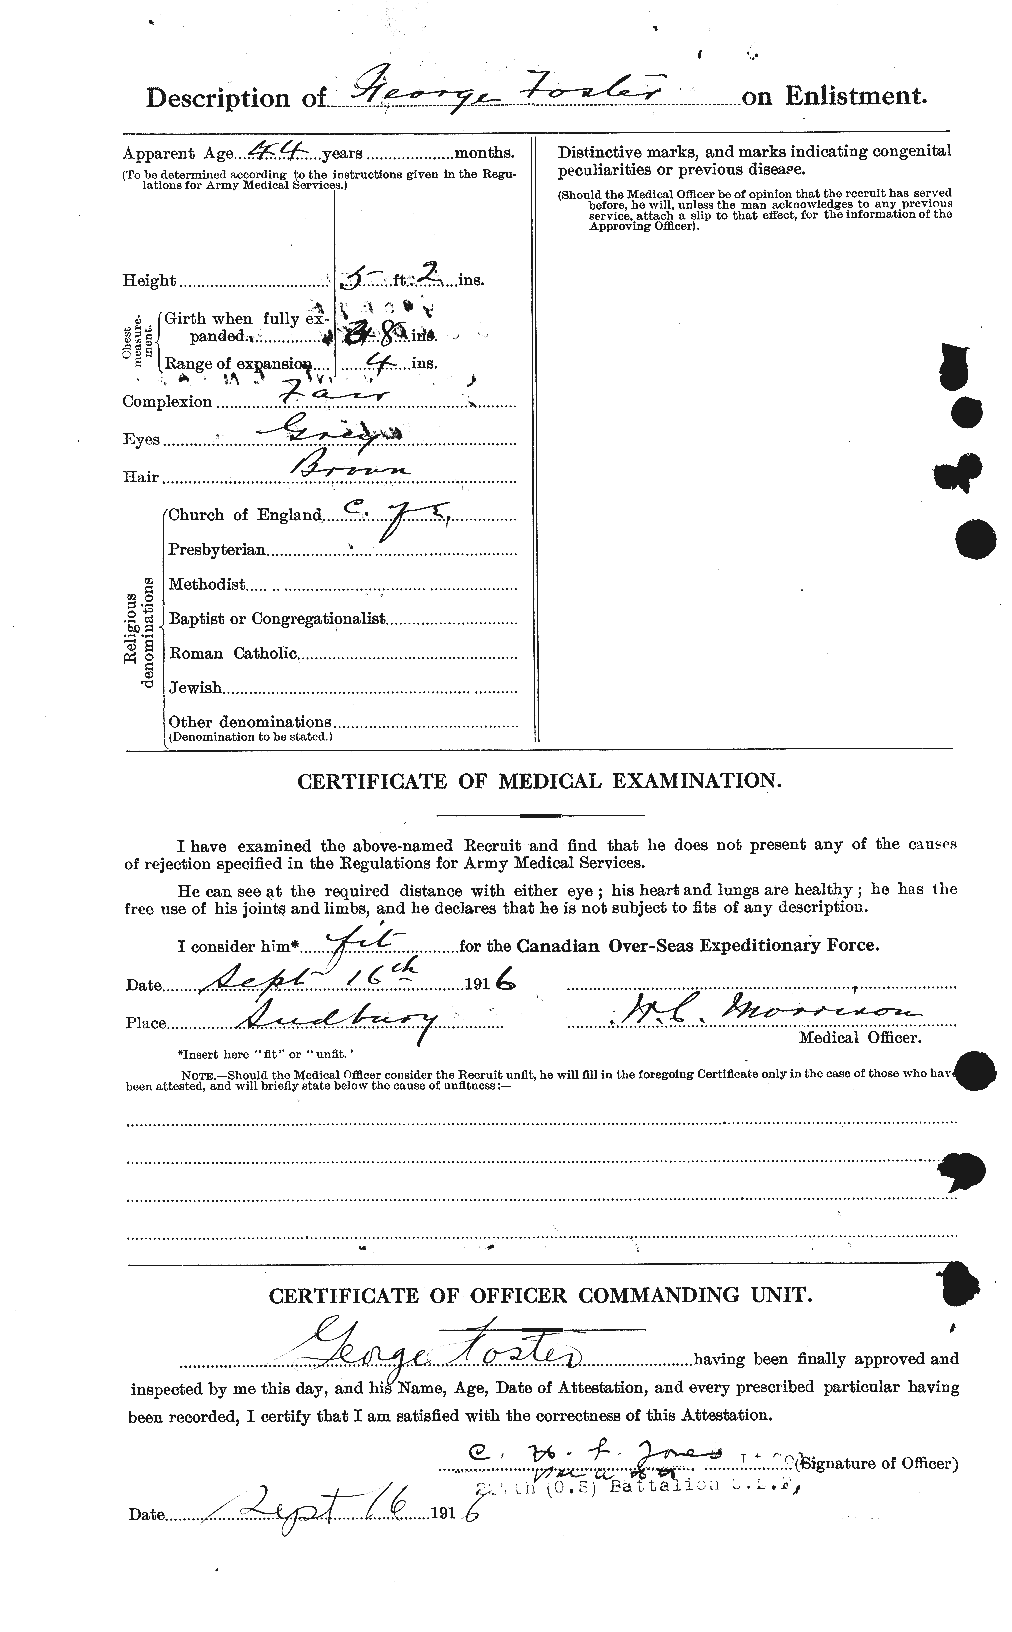 Dossiers du Personnel de la Première Guerre mondiale - CEC 330667b